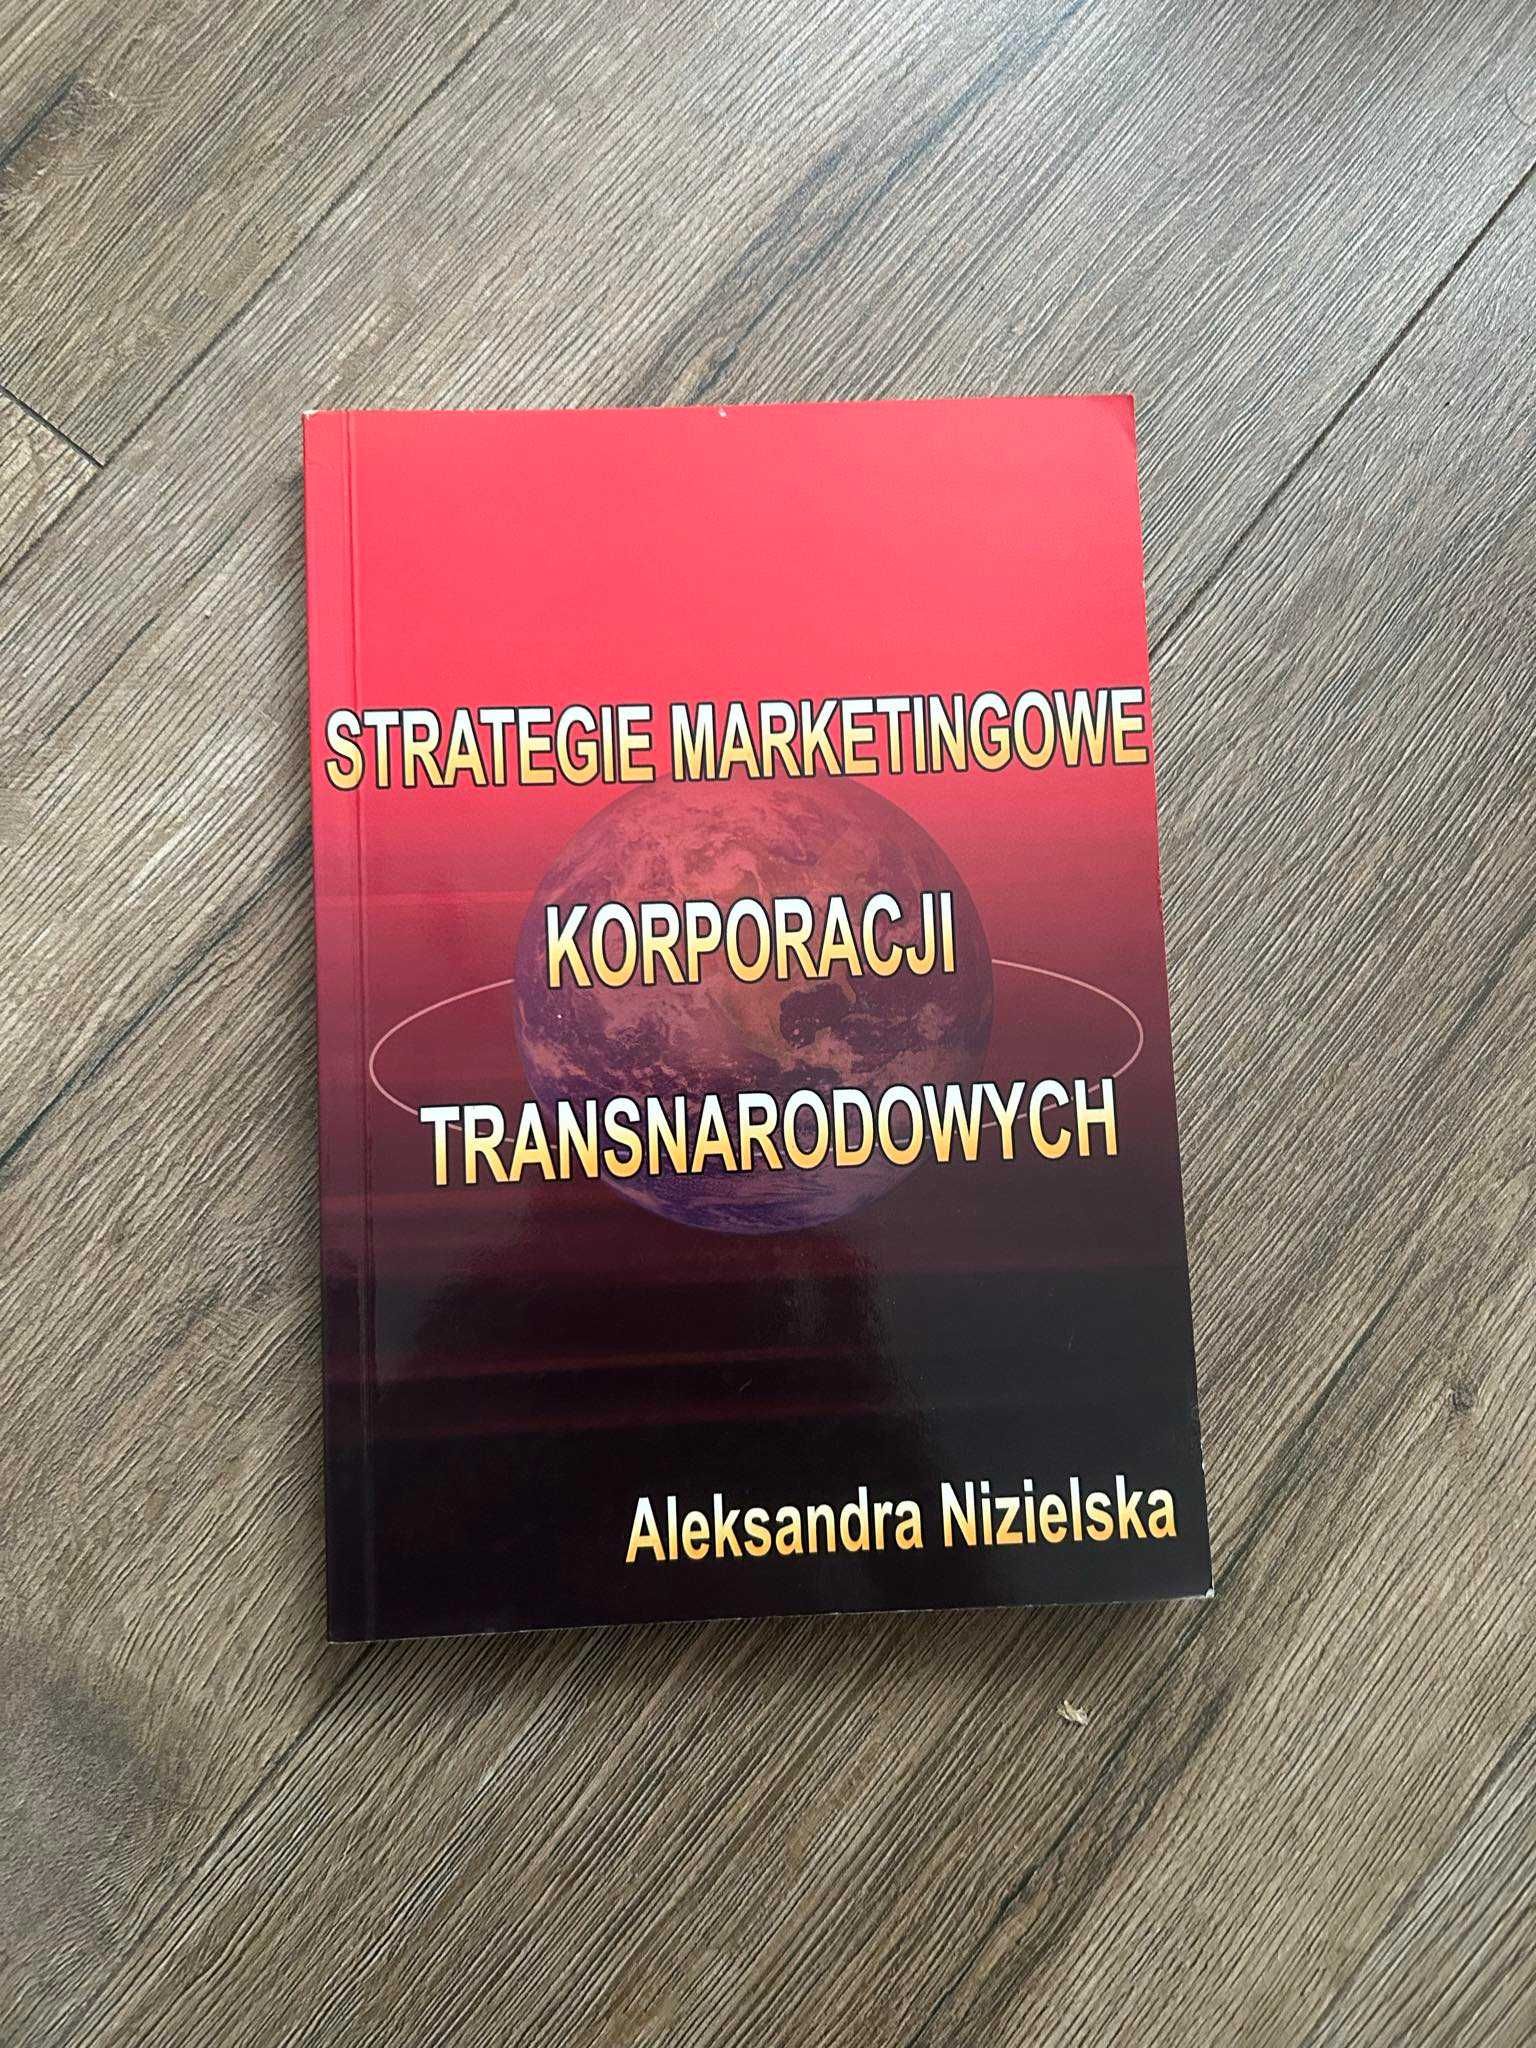 Strategie Marketingowe Korporacji Transnarodowych
Aleksandra Nizielska